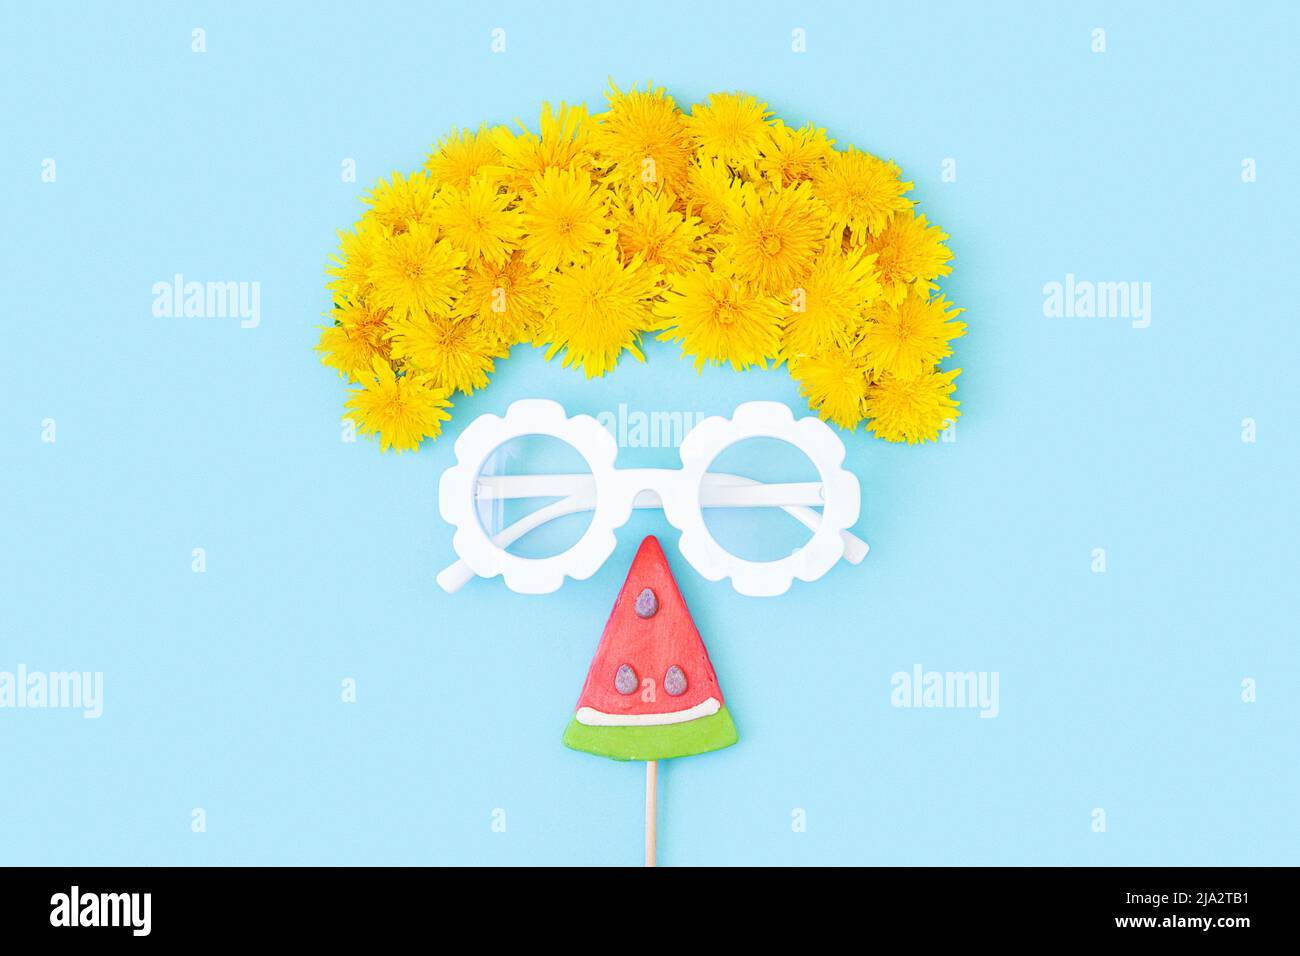 Concetto creativo e luminoso d'estate. Faccia astratta di un touristmade con vetri, fiori, e lollipop watermelon su sfondo blu. Vista dall'alto, disposizione piatta. Foto Stock